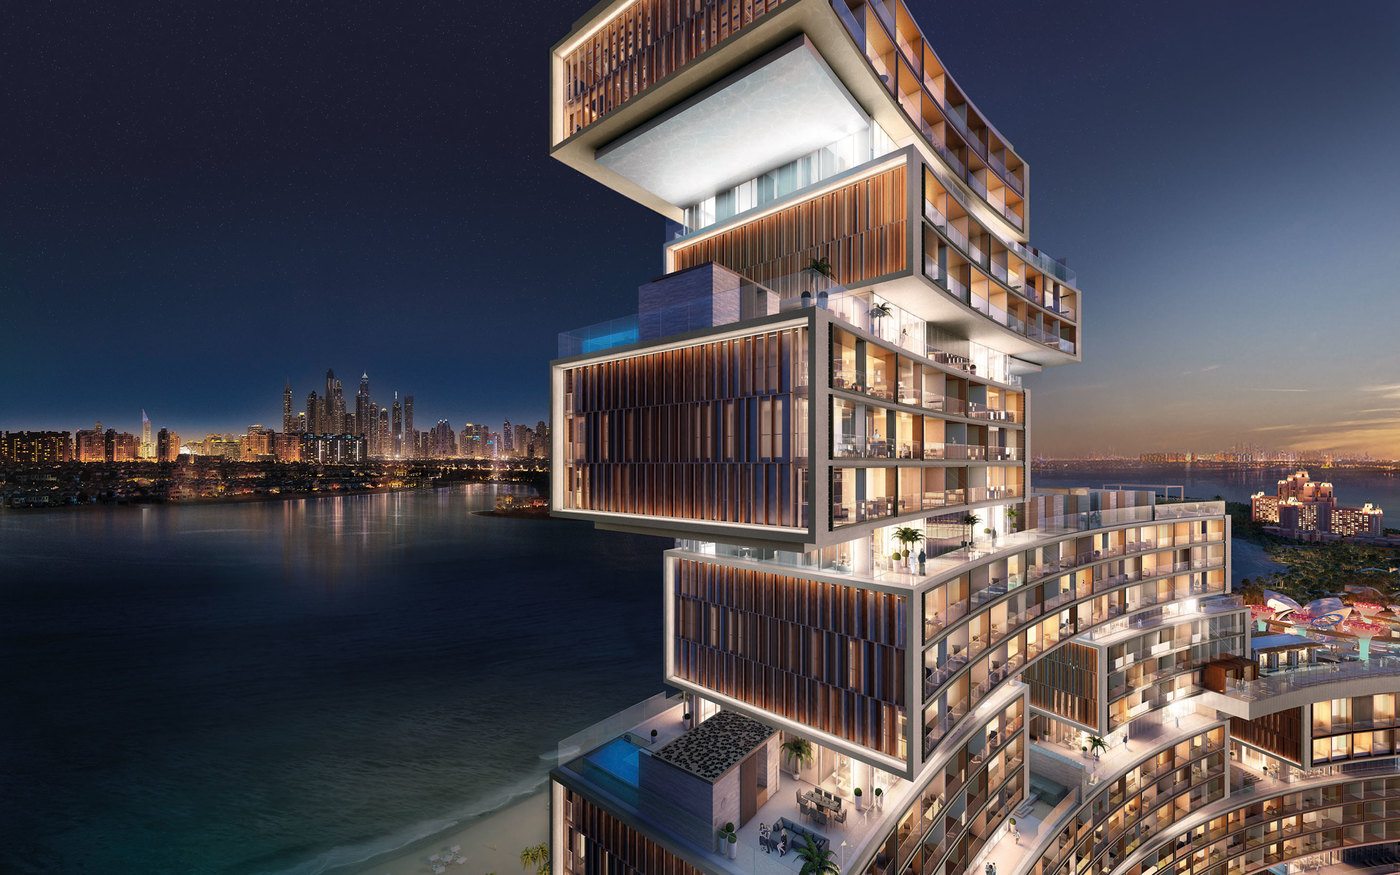 imagen 1 de The Royal Atlantis Resort & Residences, un nuevo edificio de lujo y escándalo en Dubai.